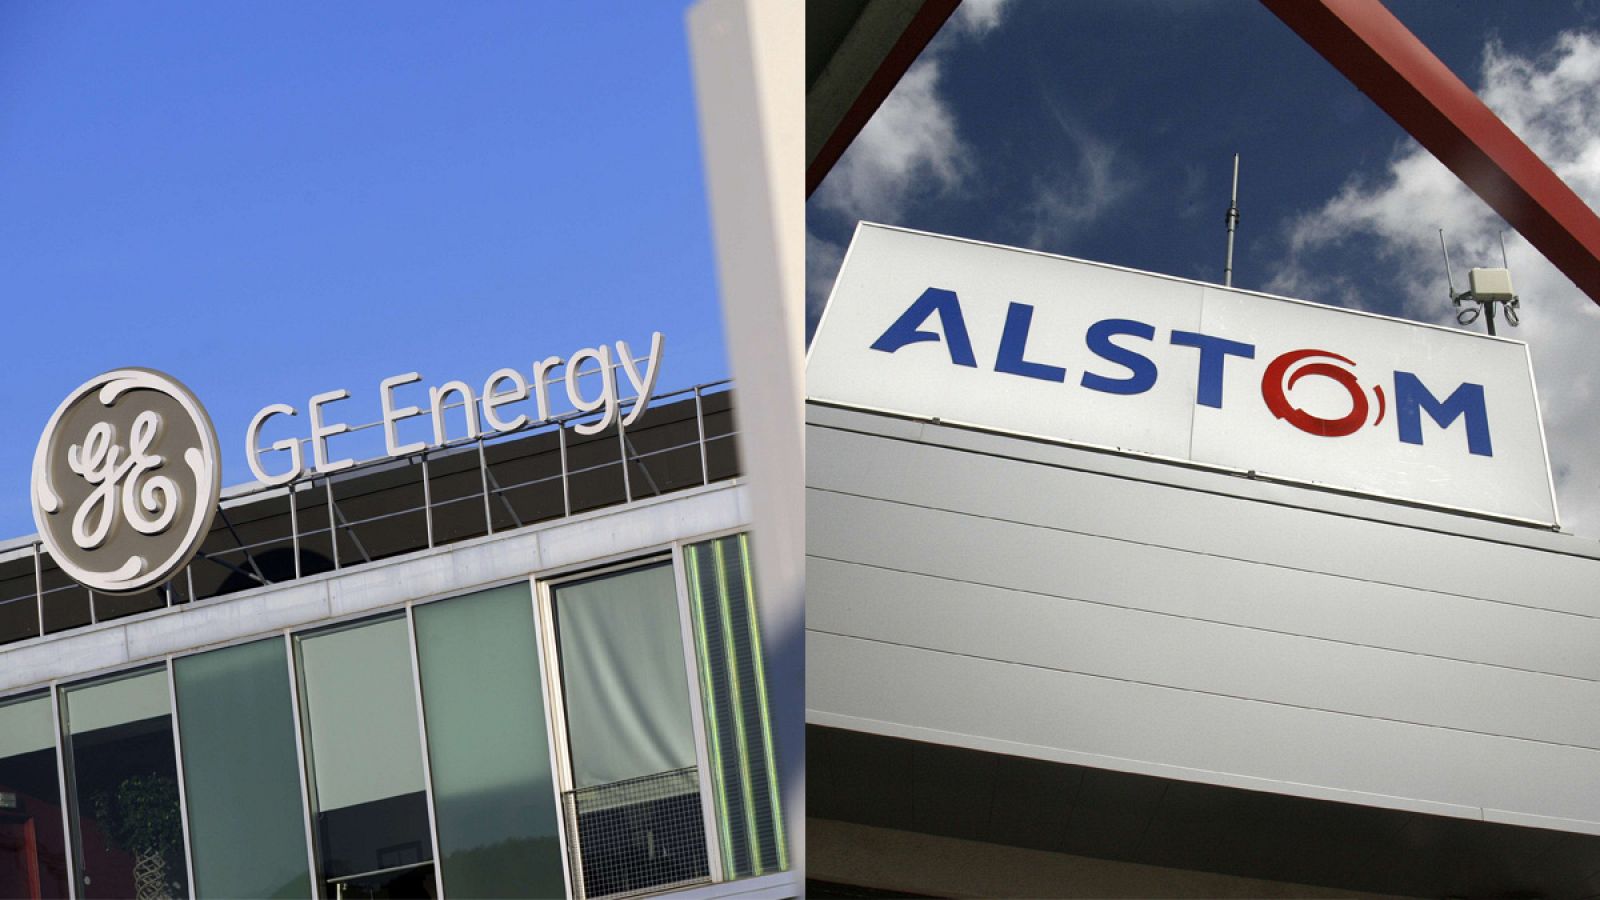 Fotomontaje con los logos de General Electric y Alstom